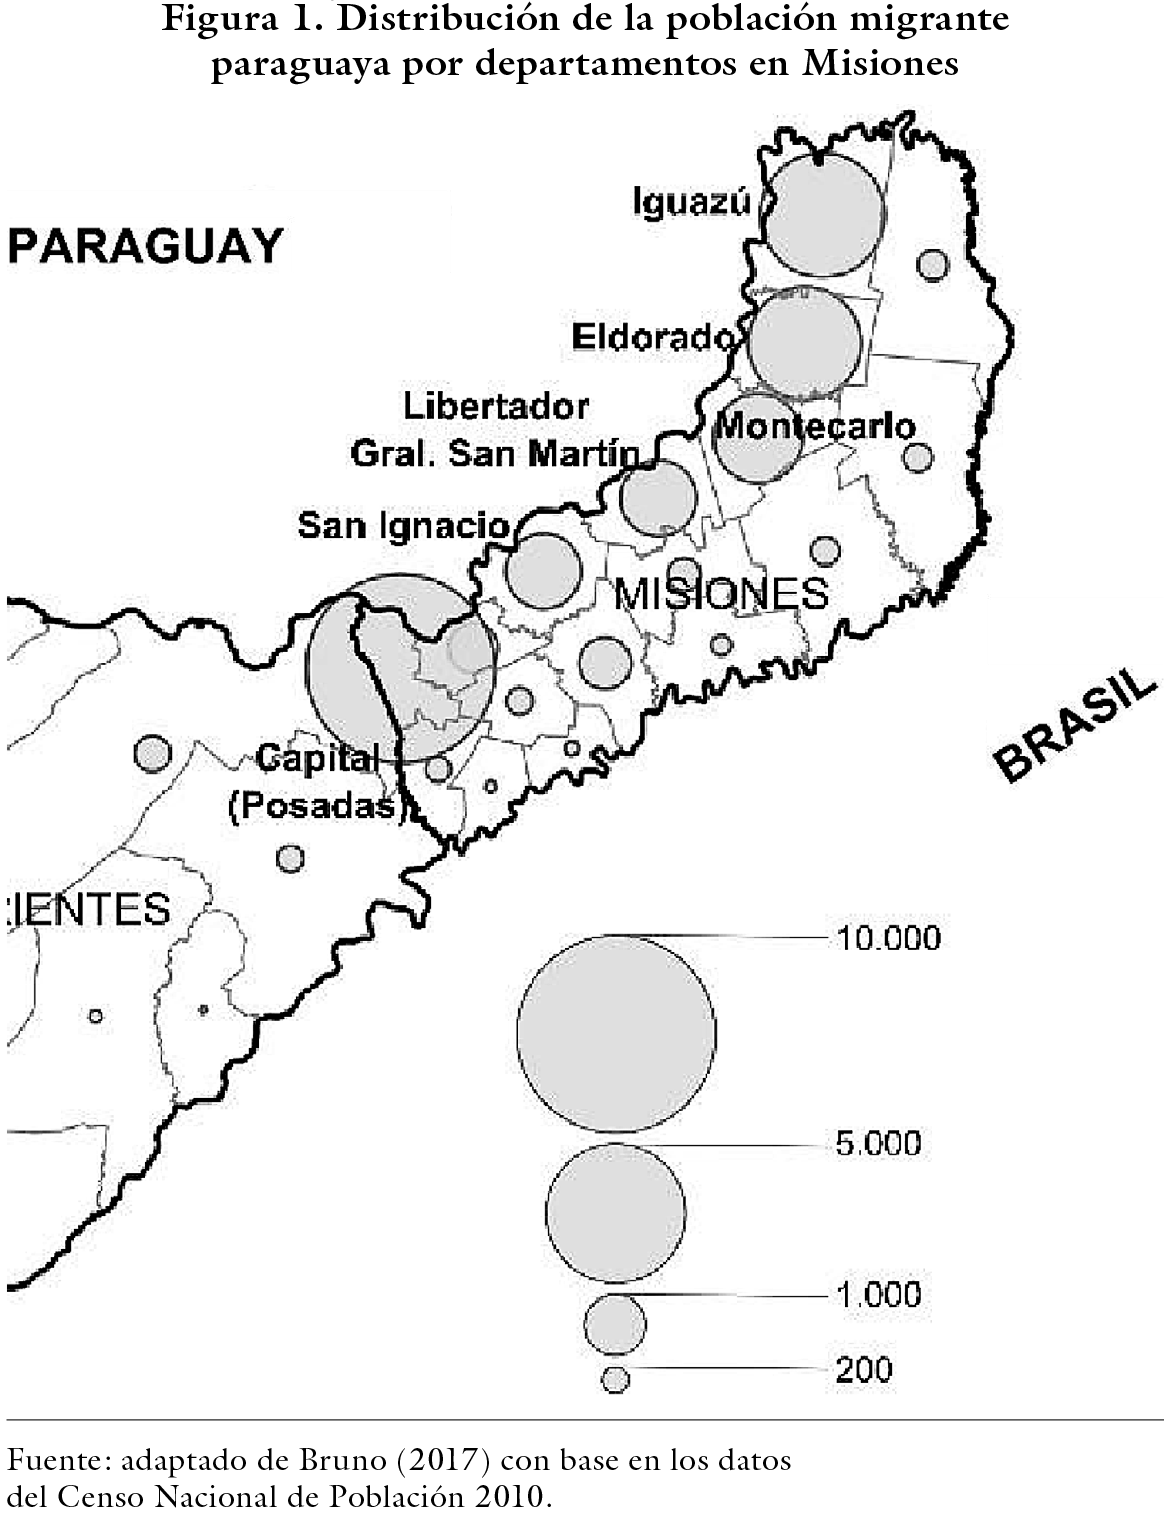 Distribución de la población migrante paraguaya por departamentos en Misiones